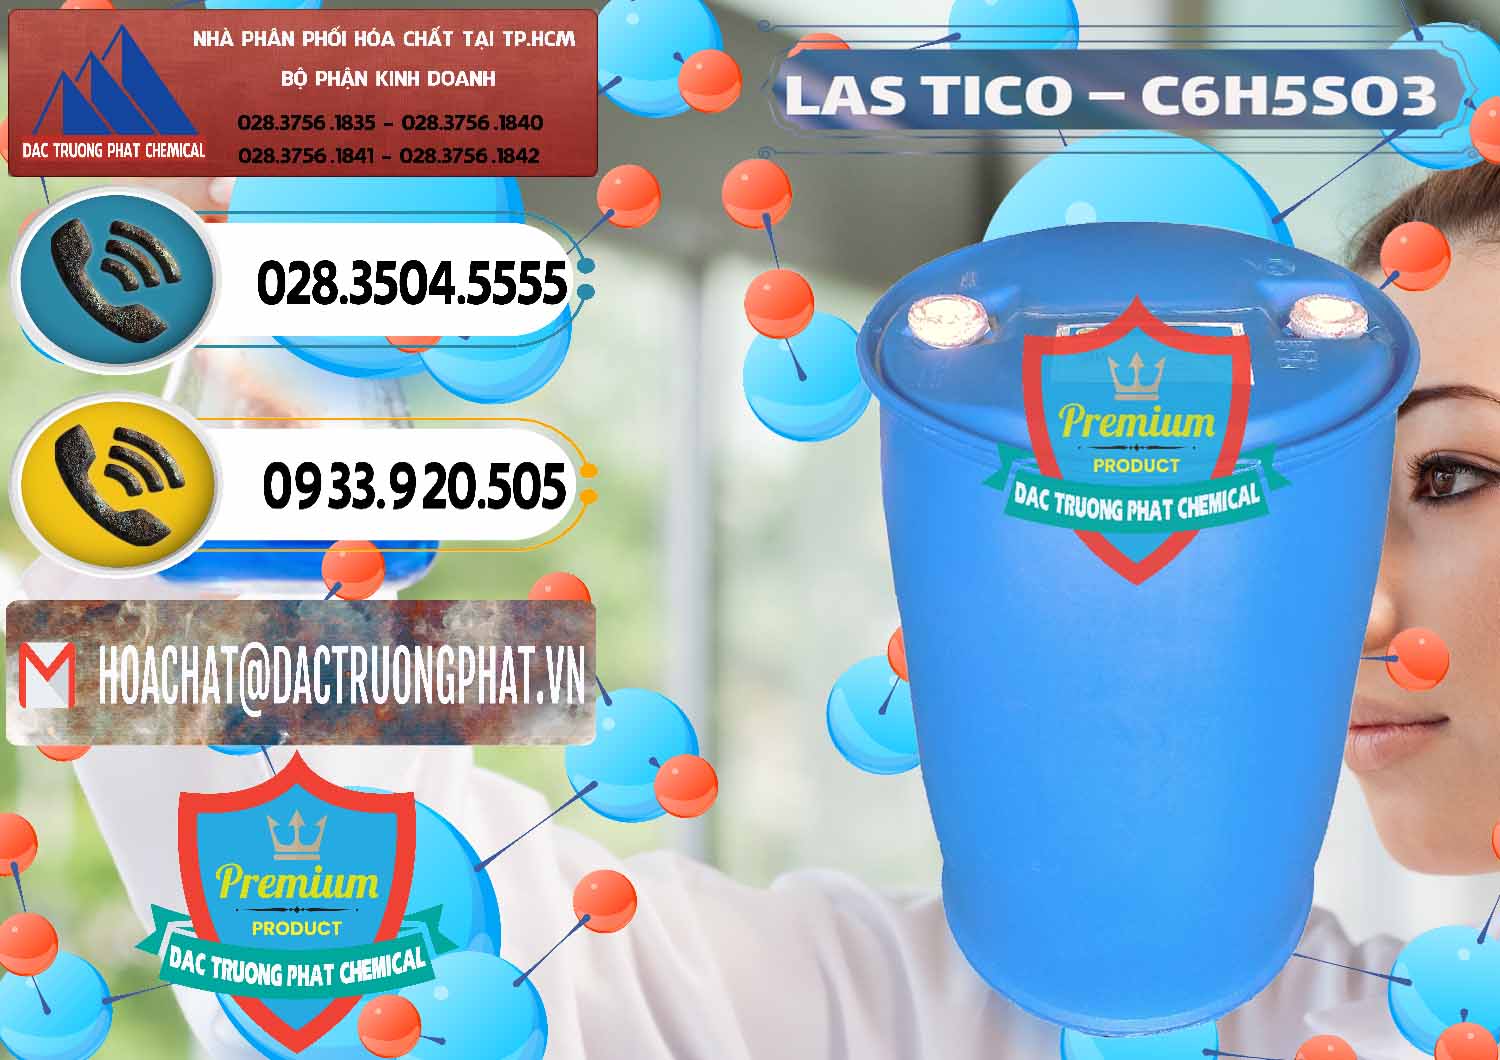 Cty chuyên phân phối & cung ứng Chất tạo bọt Las H Tico Việt Nam - 0190 - Công ty bán - cung cấp hóa chất tại TP.HCM - hoachatdetnhuom.vn